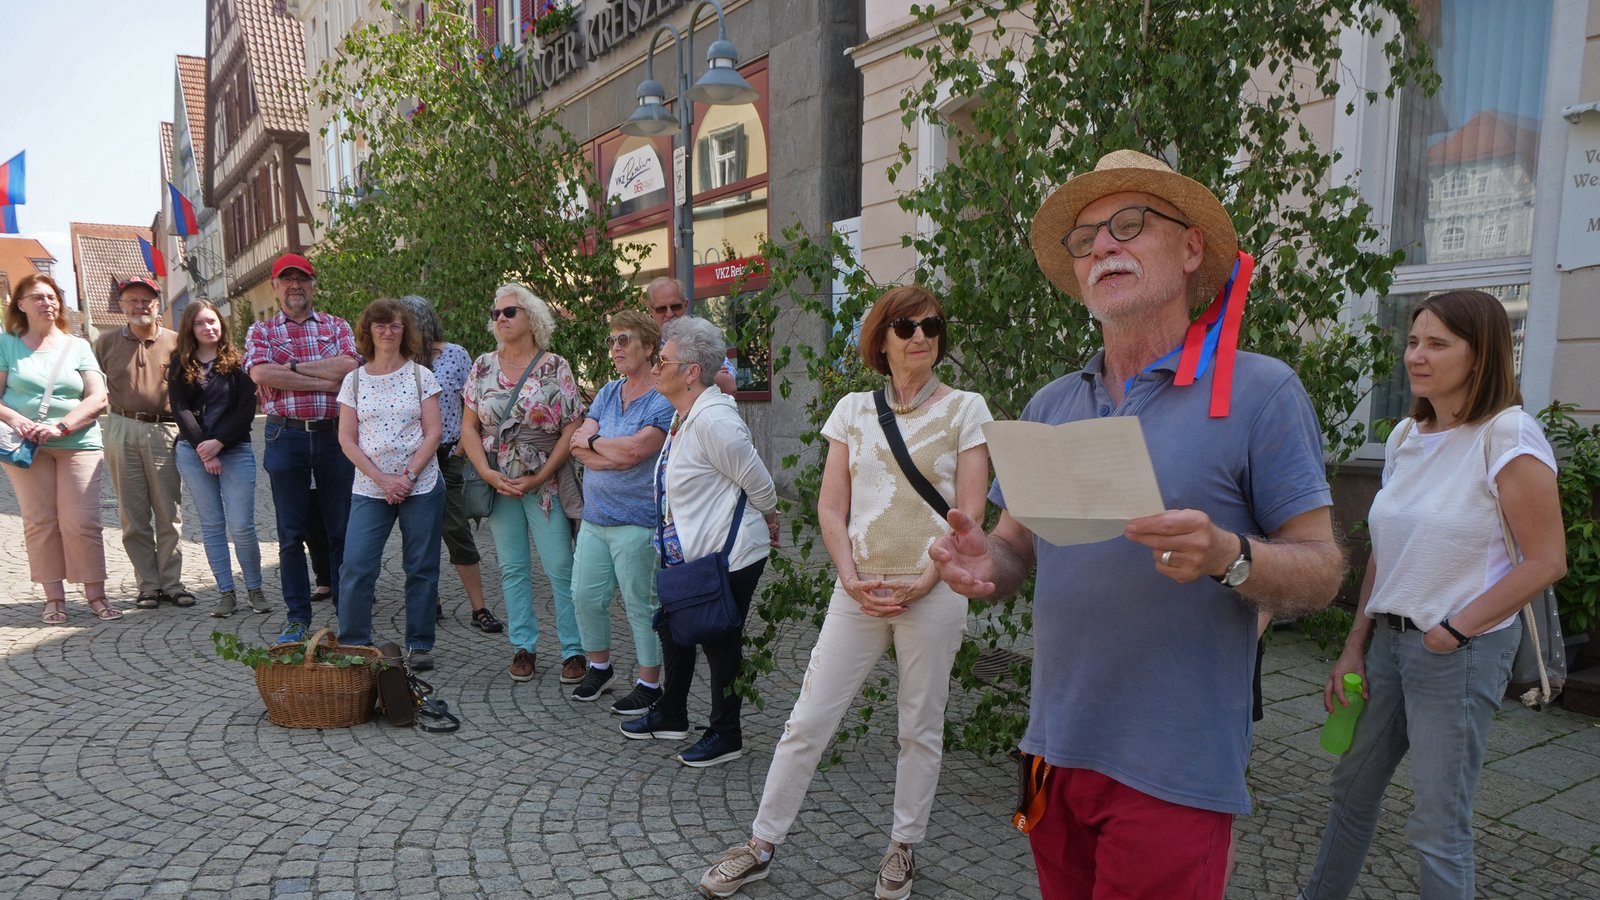 Mit einem Outfit in Maientagsfarben erzählte Stadtführer Eberhard Steinhilber viel über die Geschichte des Maientags und die Veränderungen in den Traditionen. Foto: Friedrich